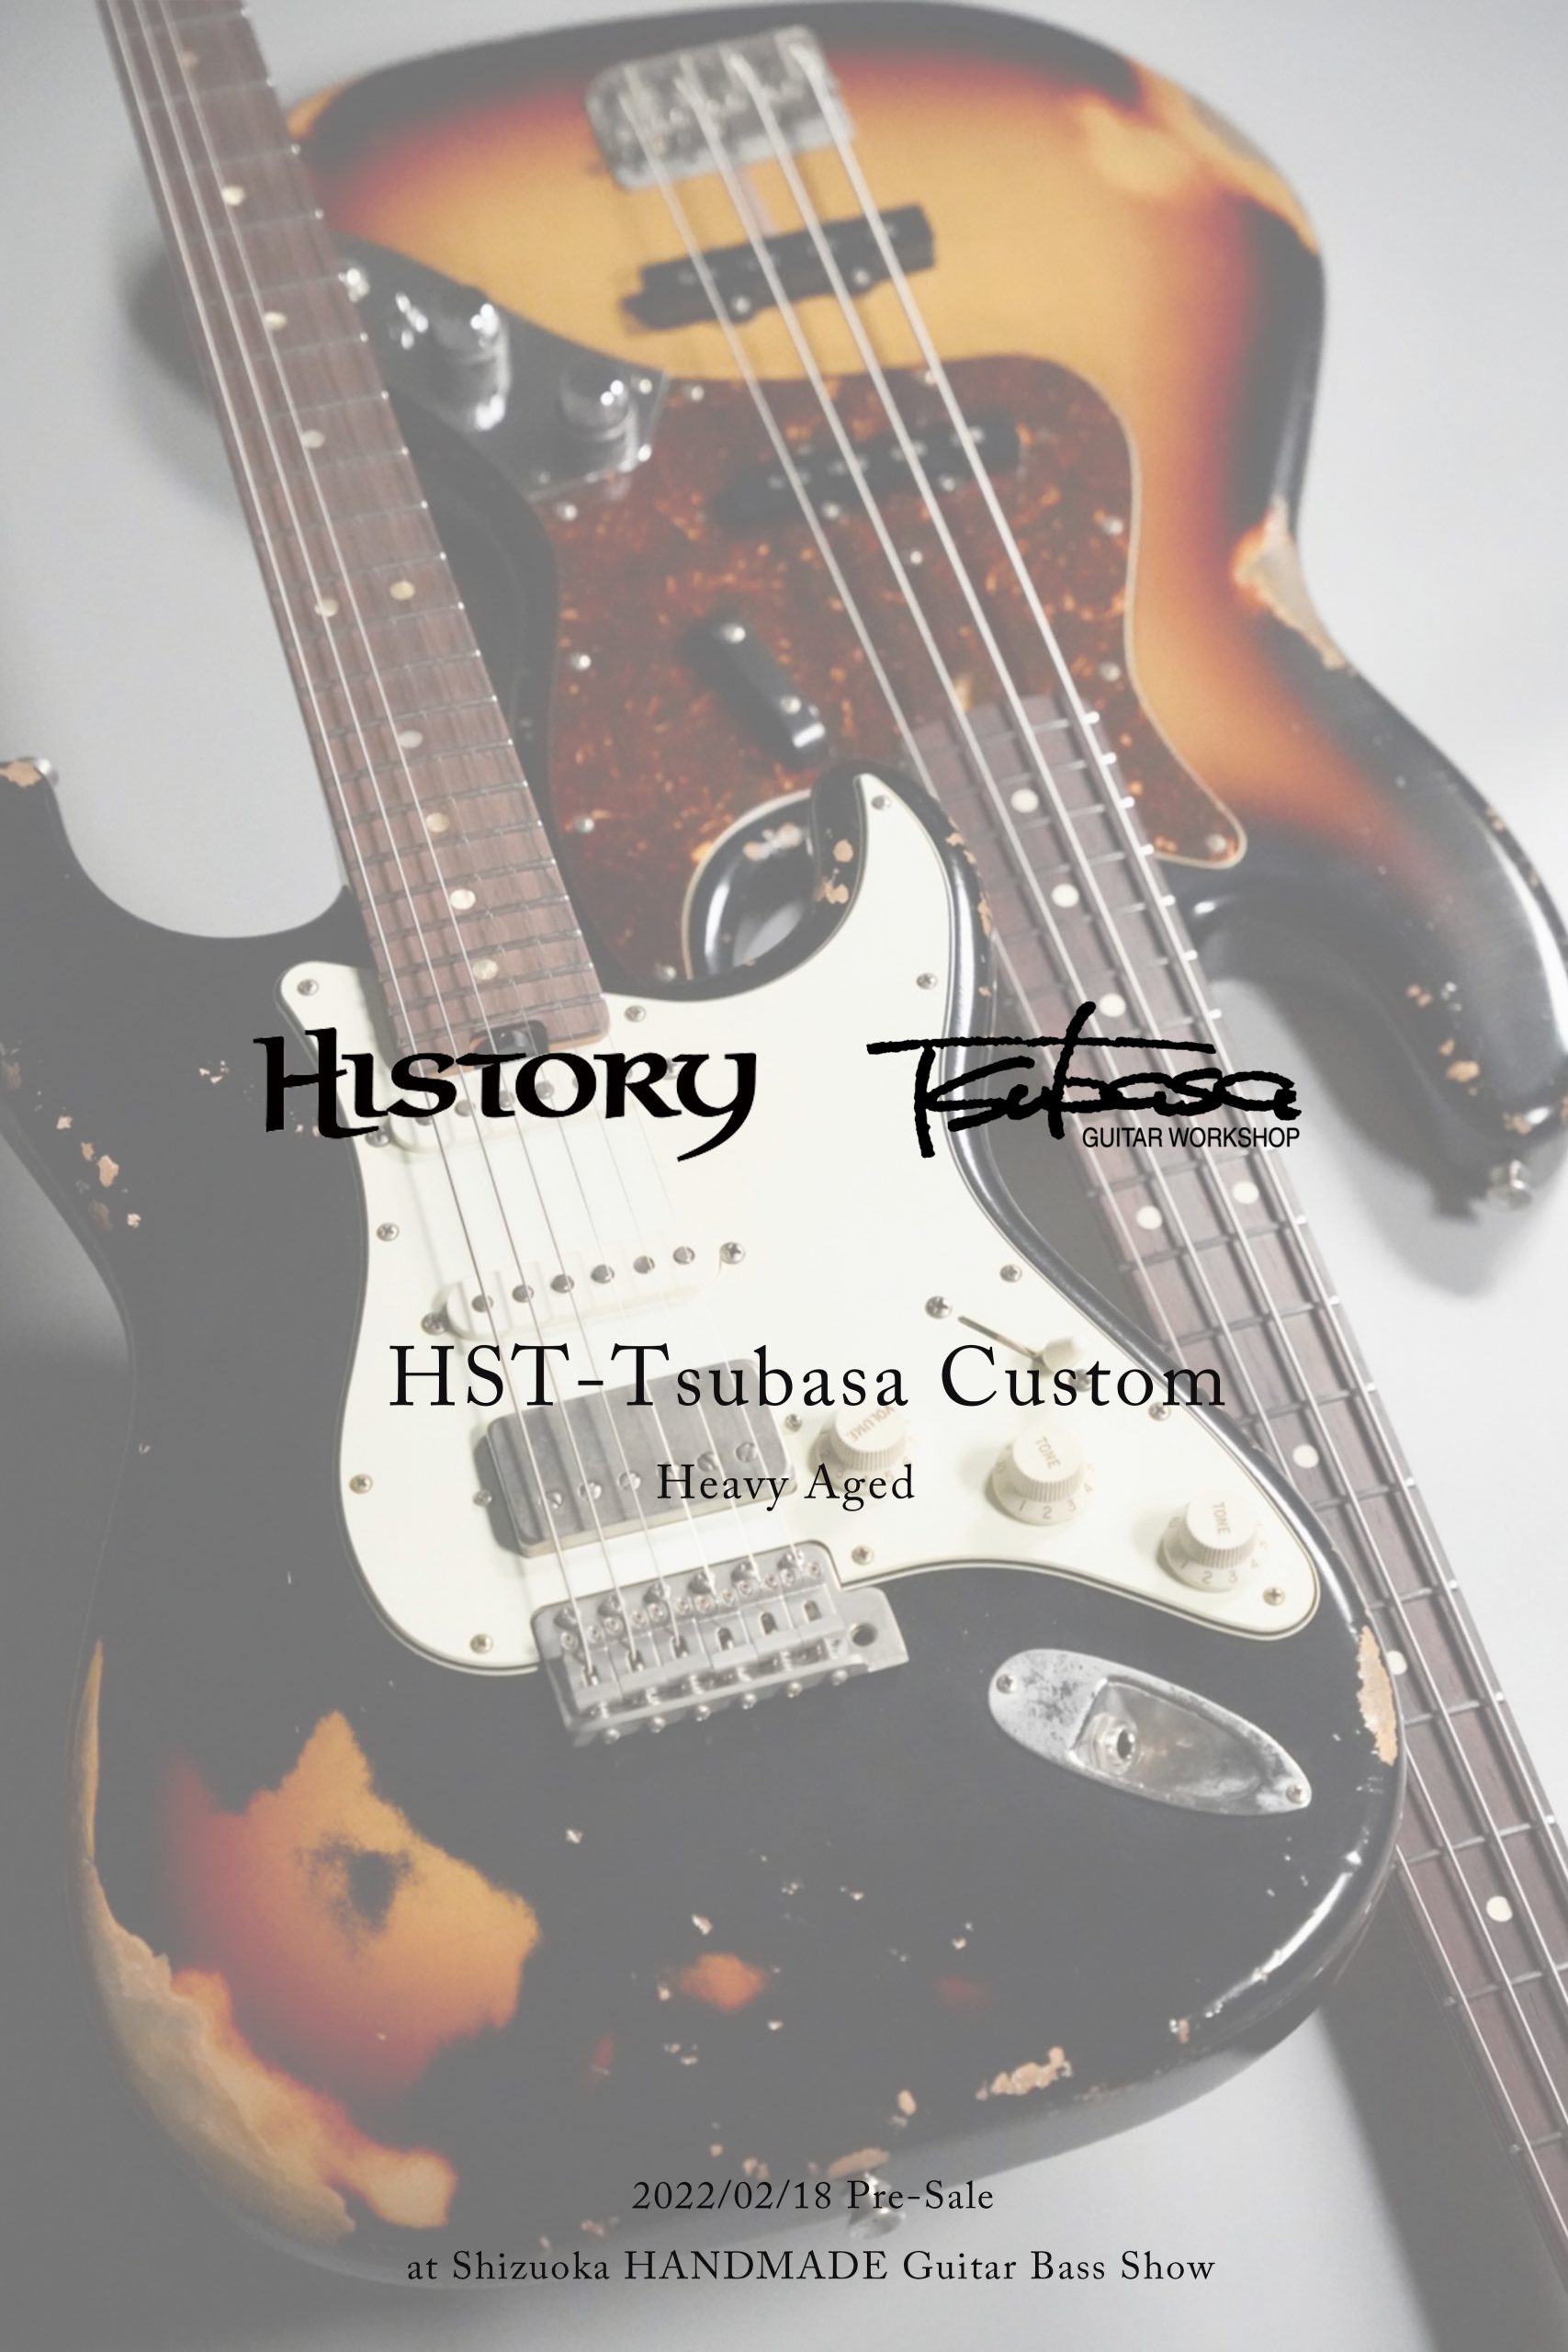 *静岡パルコ店オーダーとなる、コラボレーションギター＆ベースを発売致します。 島村楽器 静岡パルコ店をご利用頂き有難うございます。店長の平林でございます。島村楽器が手掛ける「HISTORY」と、長野県に拠点を構える国産ハイエンドギターブランド「TSUBASA Guitarworkshop」の初コラボ […]